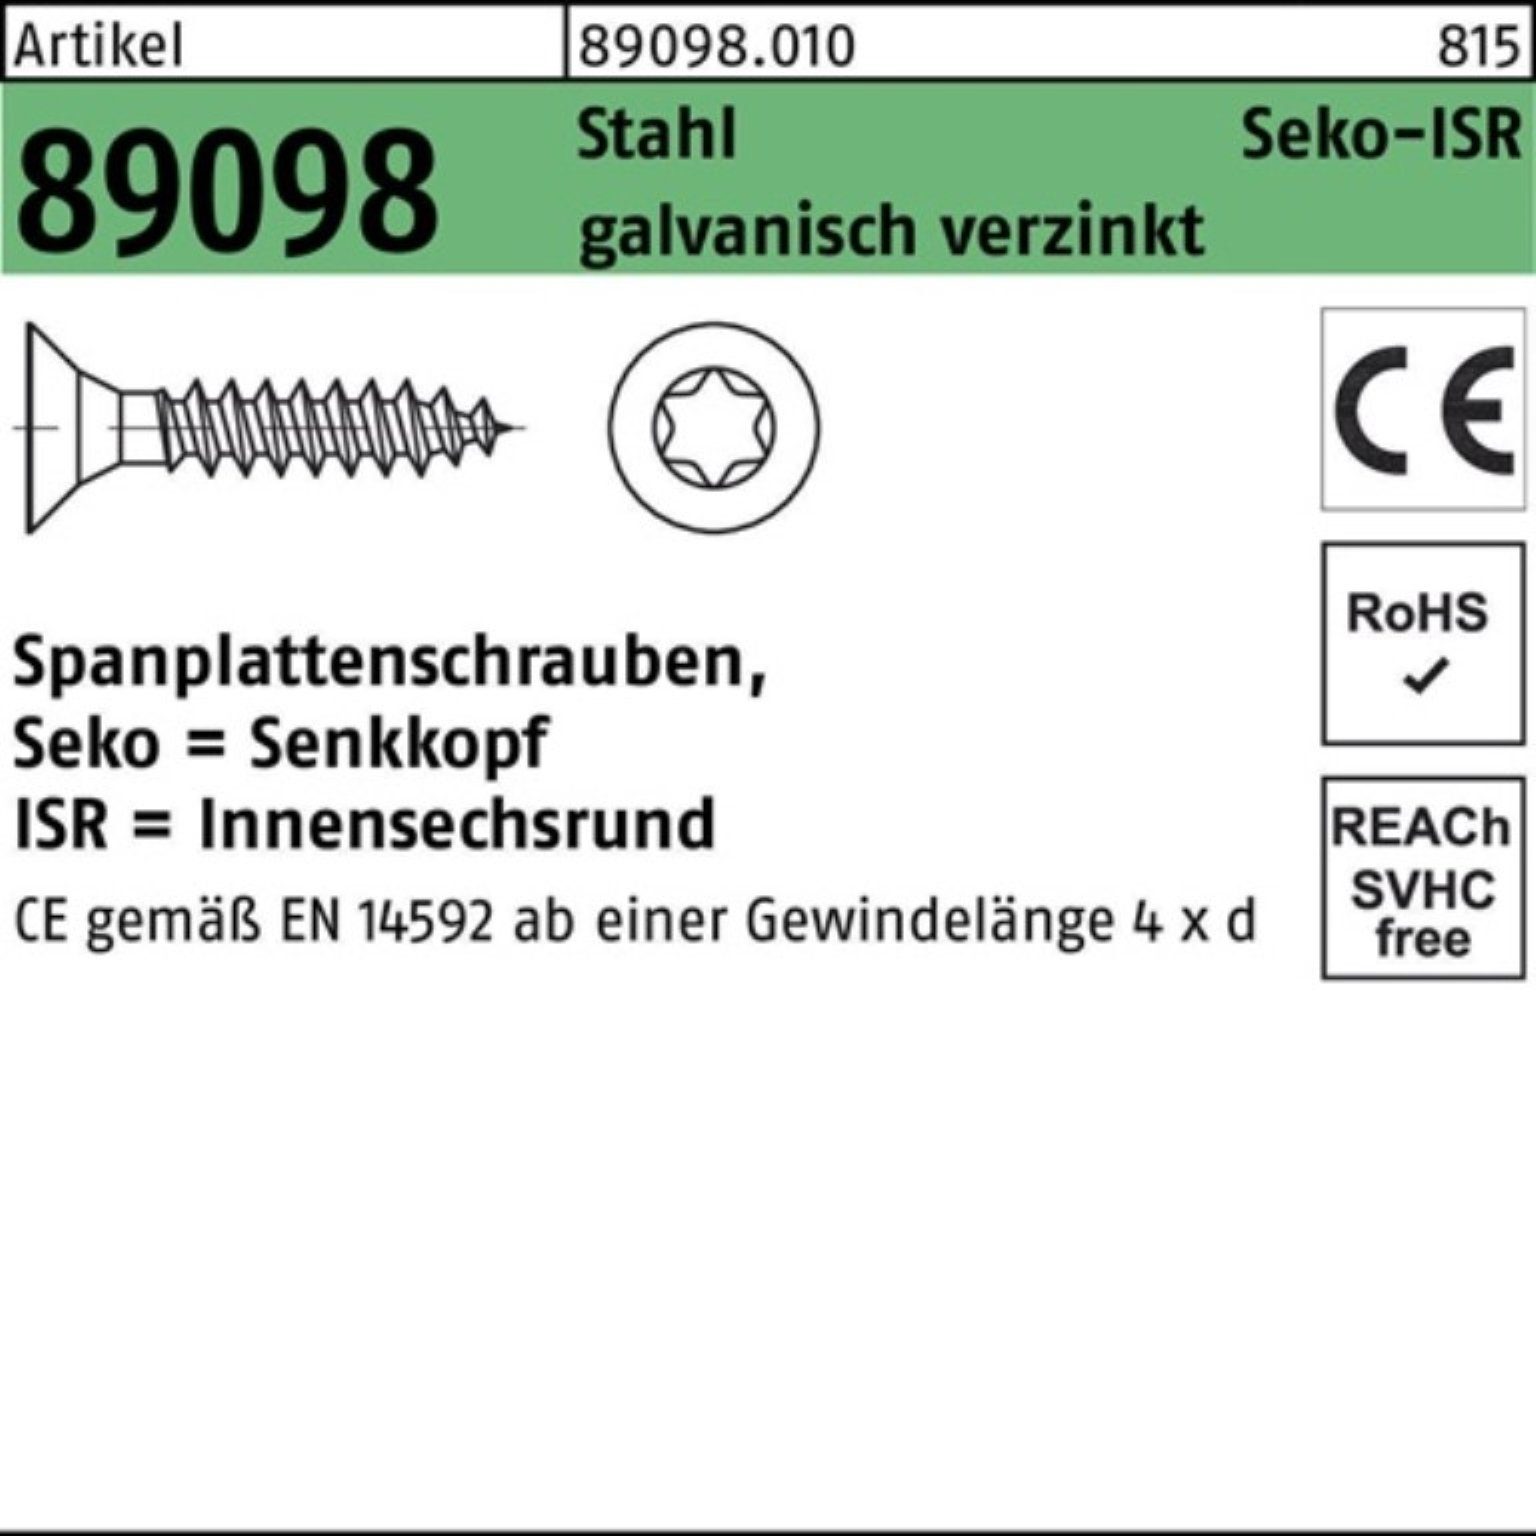 Reyher Spanplattenschraube 1000er Pack Spanplattenschraube gal 4x25-T20 Stahl ISR VG R SEKO 89098